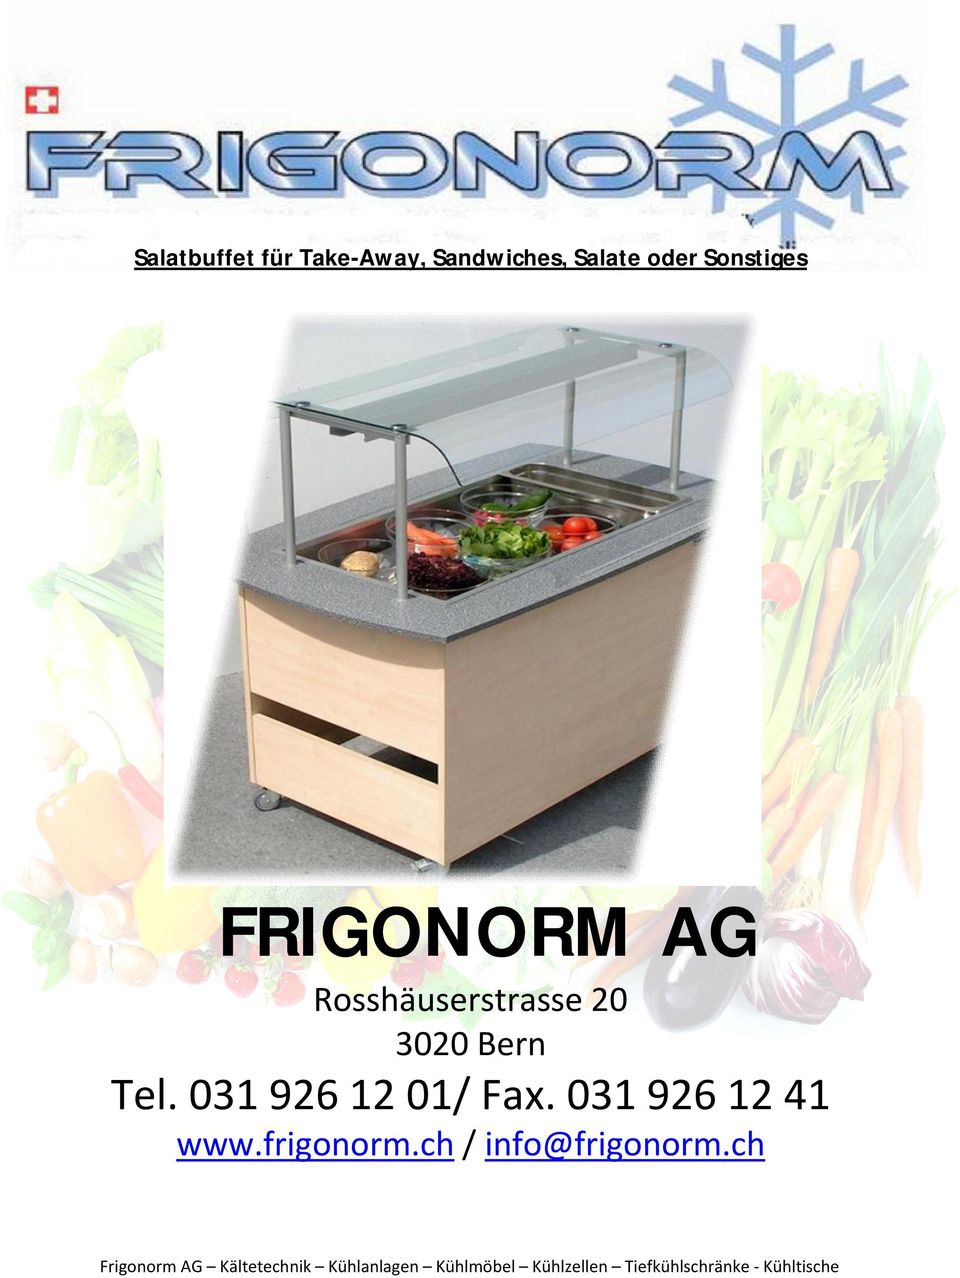 031 926 12 41 www.frigonorm.ch / info@frigonorm.